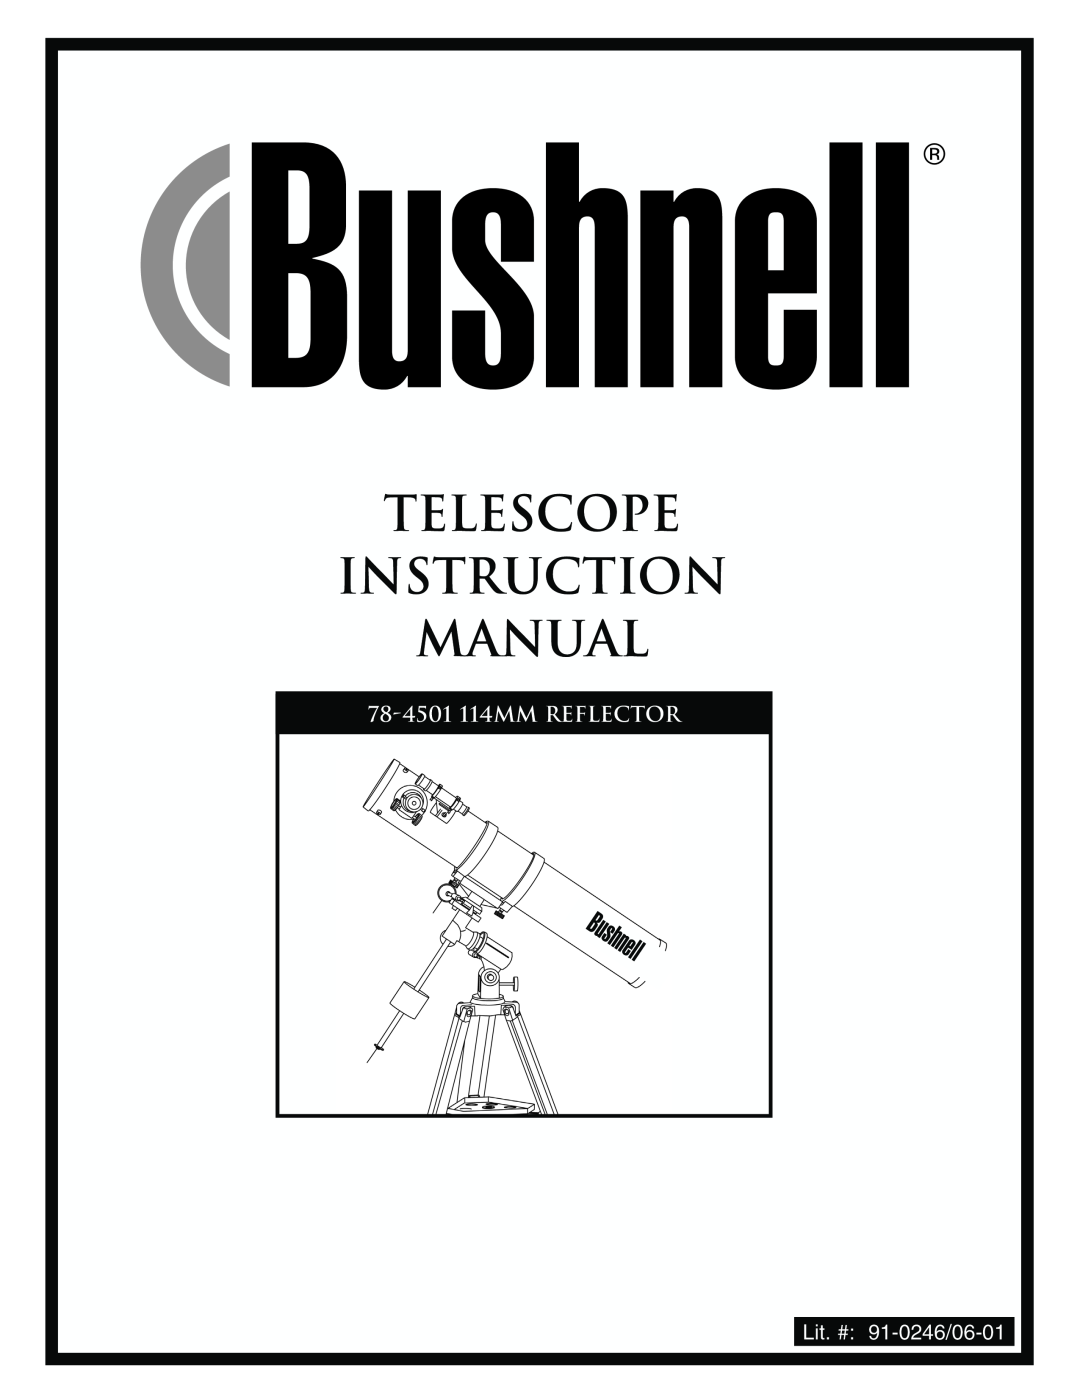 Bushnell instruction manual 78-4501114MM REFLECTOR, Lit. # 91-0246/06-01 